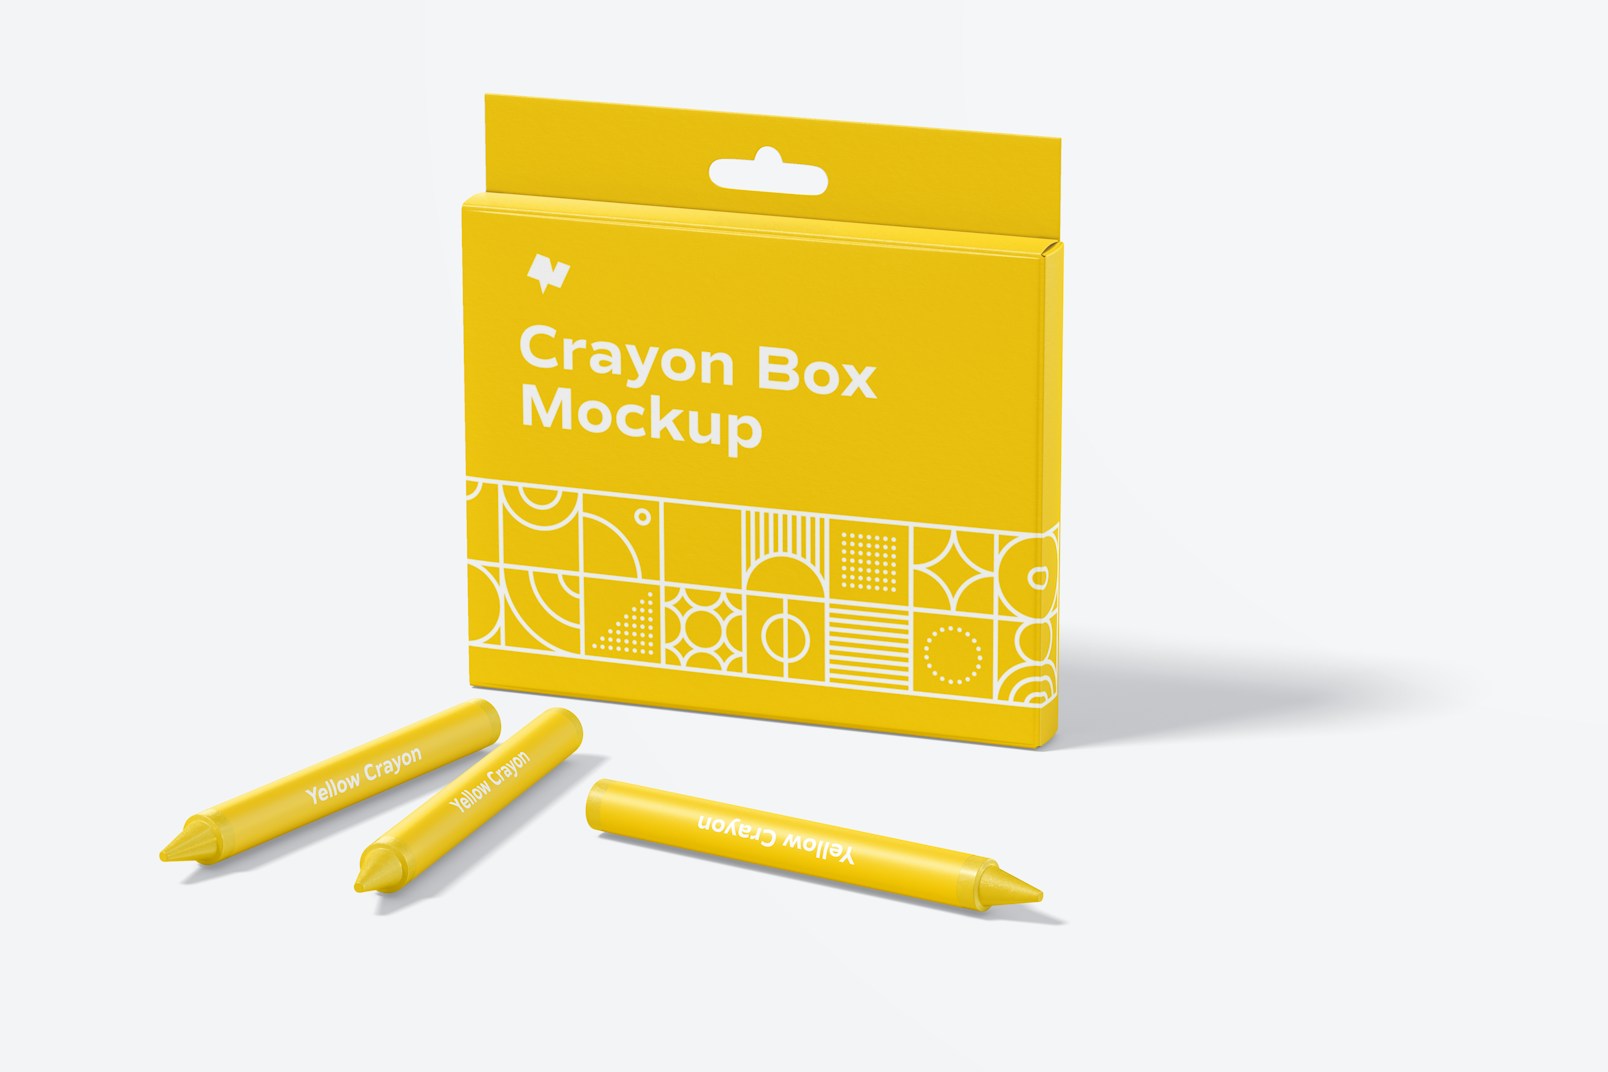 Crayon Box Mockup, Perspective View